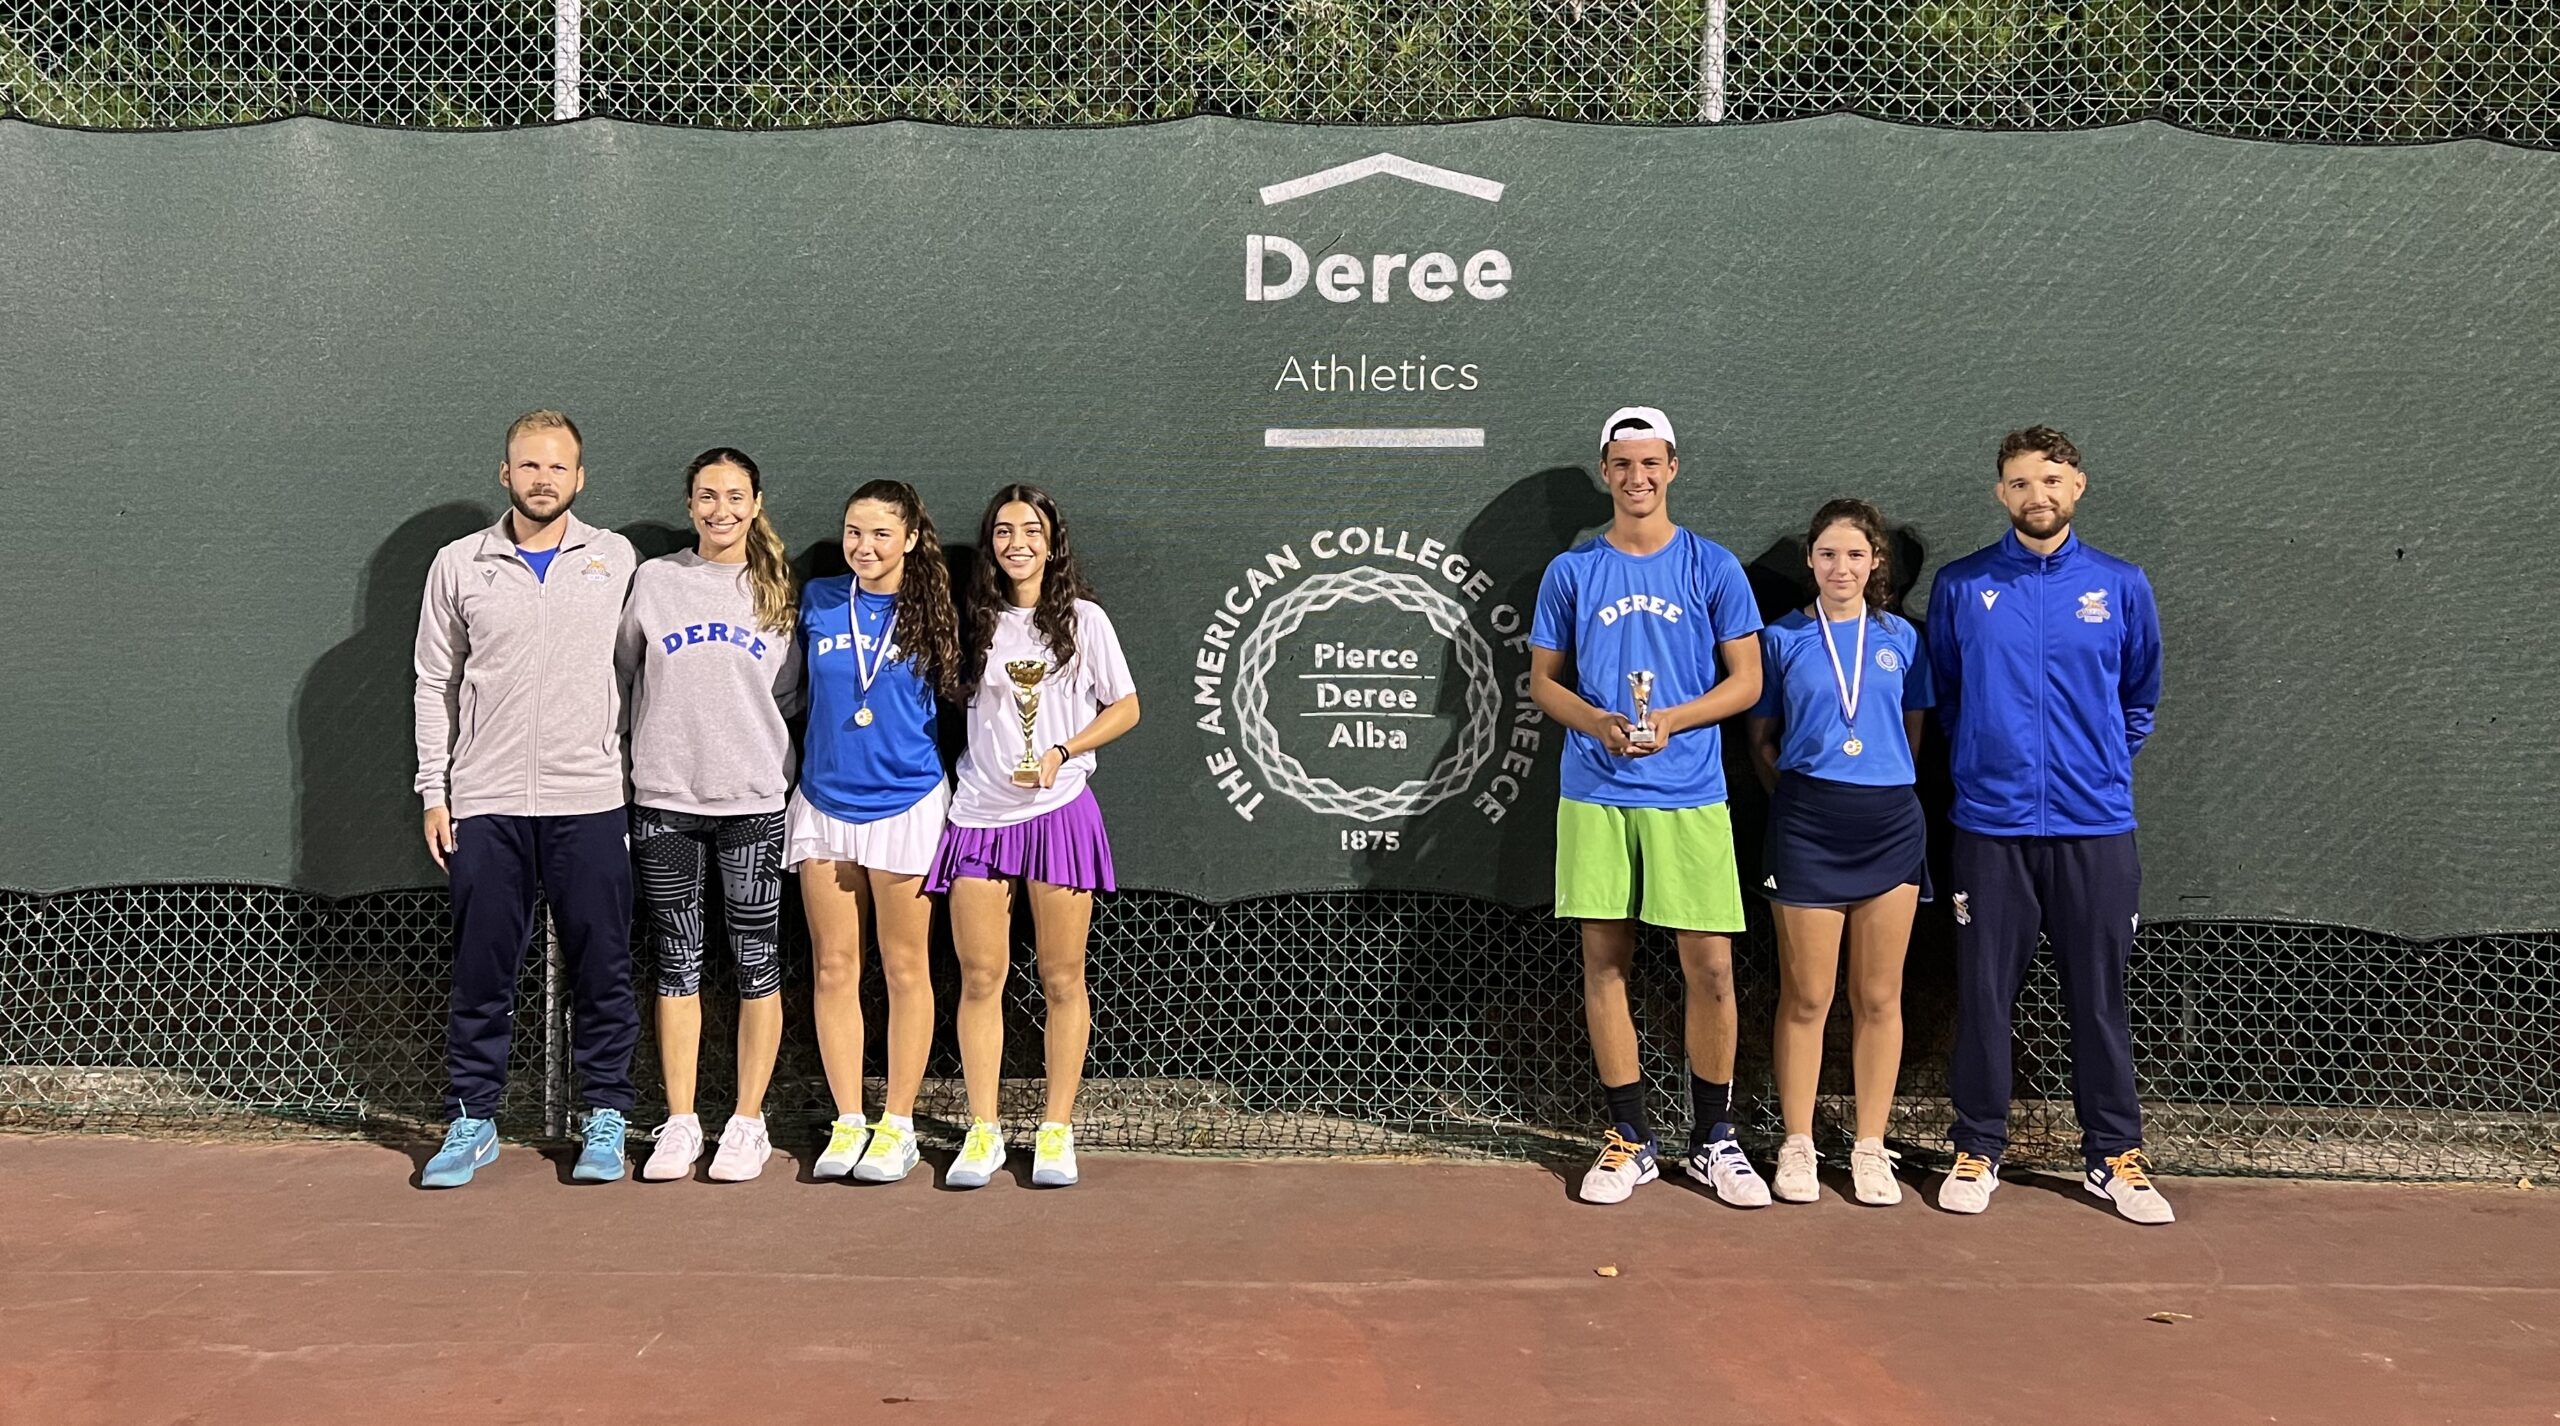 Αποτελέσματα της Deree Tennis Academy από Ε1 και Ε3 τουρνουά σε Λάρισα και Κόρινθο.